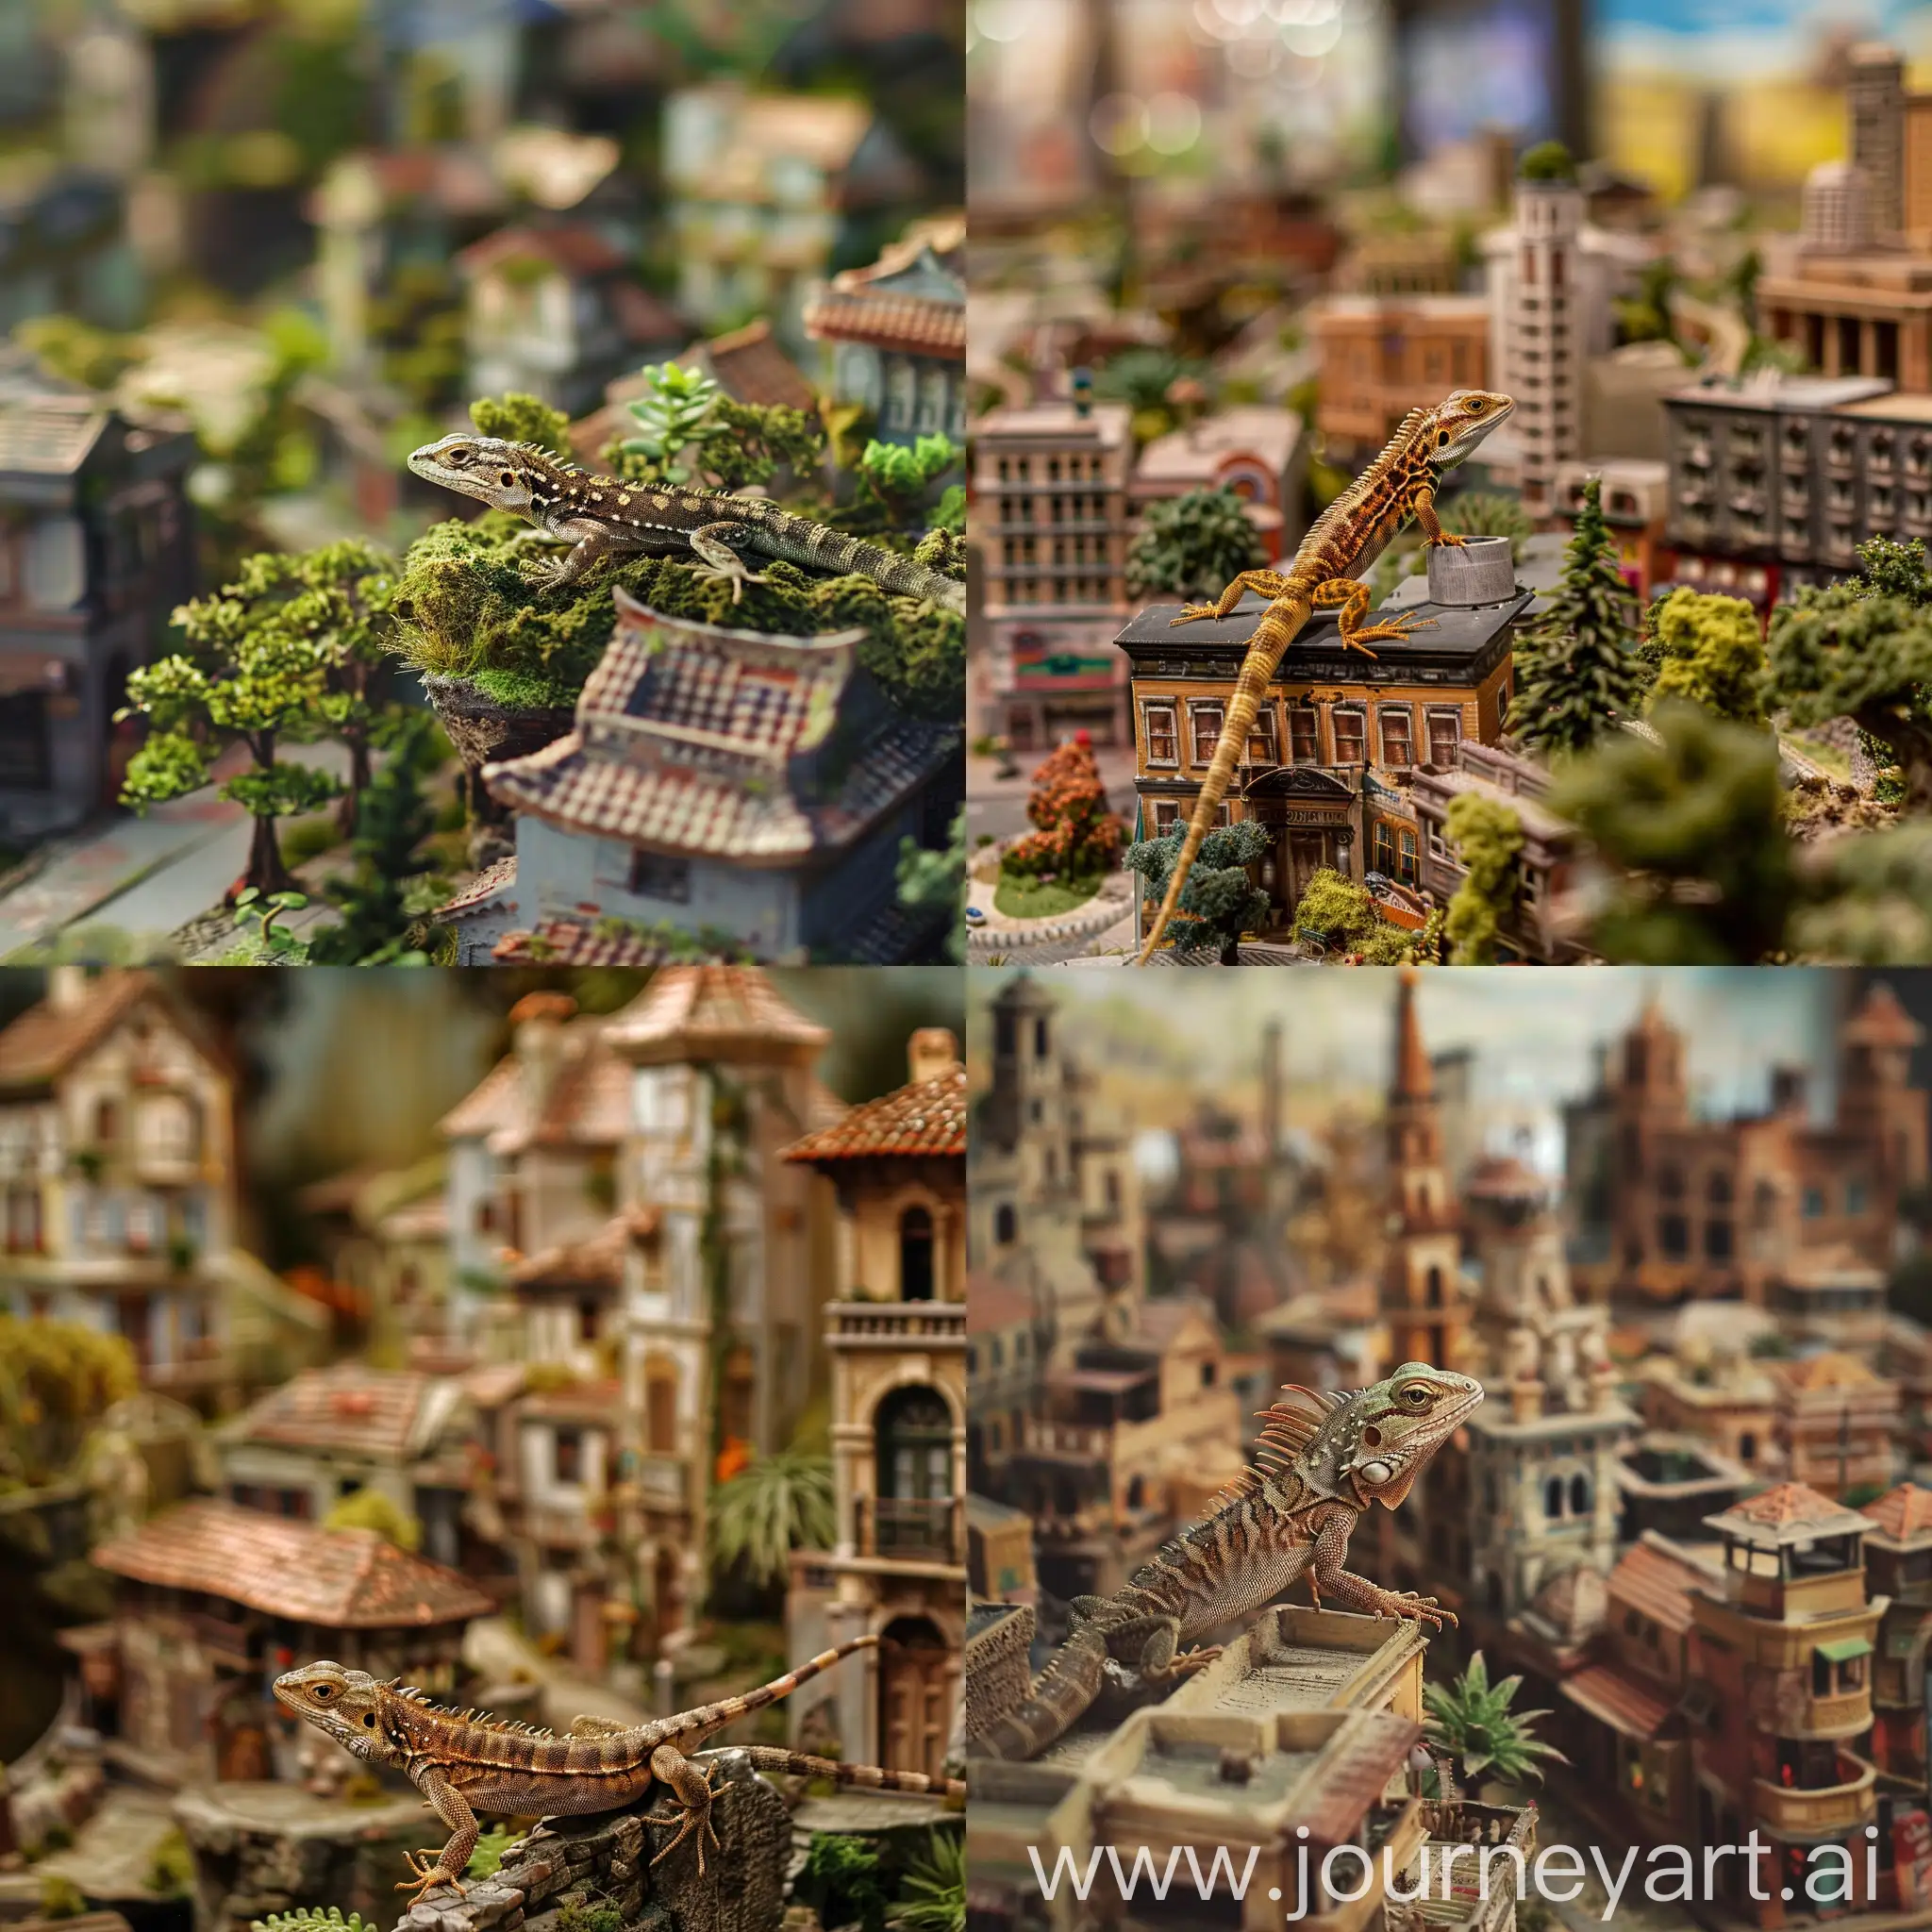 Una lagartija en una maqueta de una ciudad en miniatura